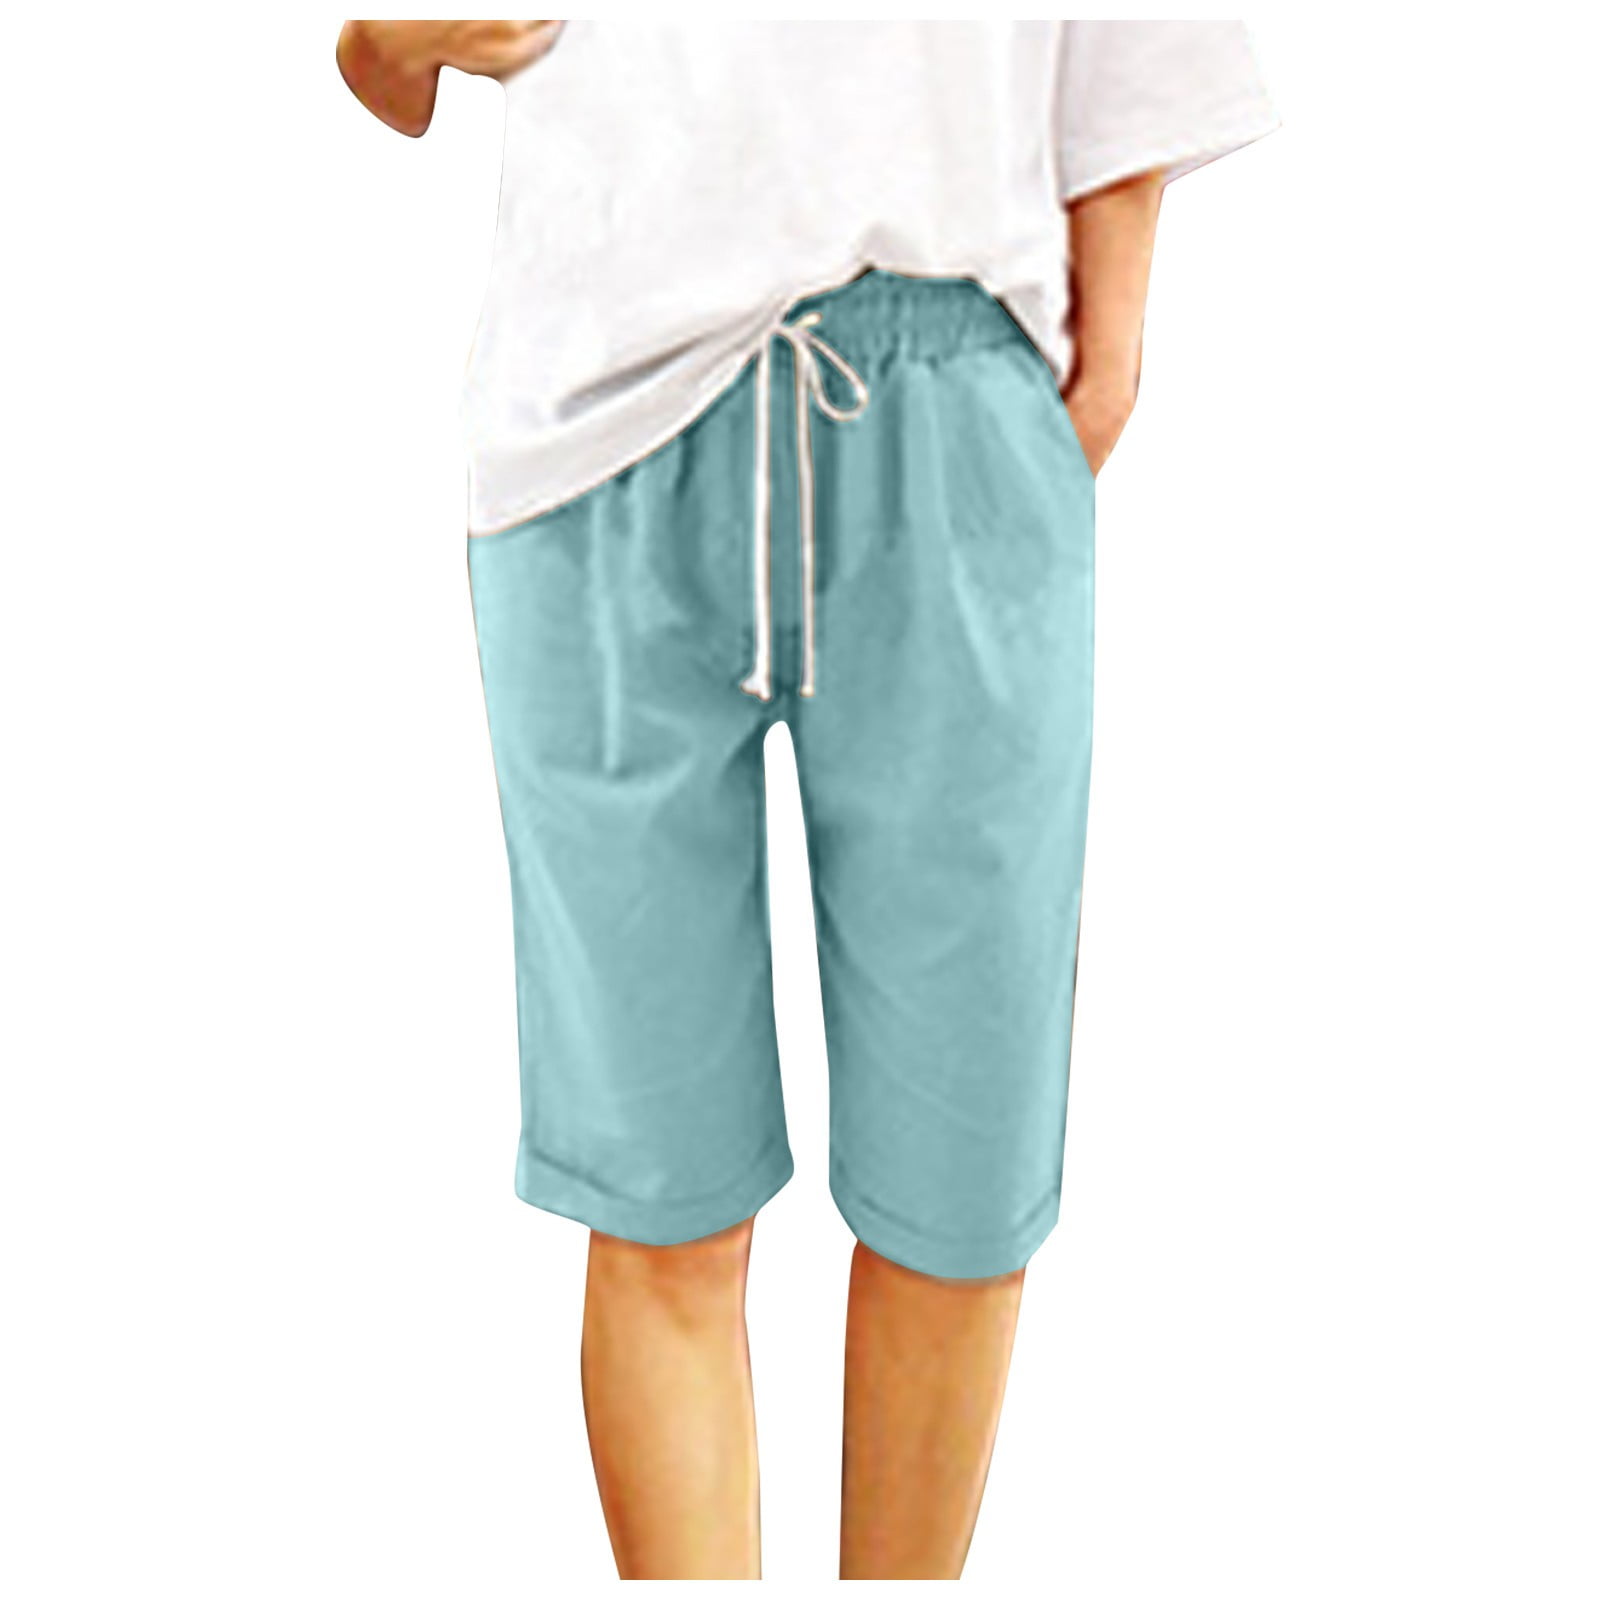 UPPADA Clearance Sales Today Deals Summer Shorts for Women Linen ...